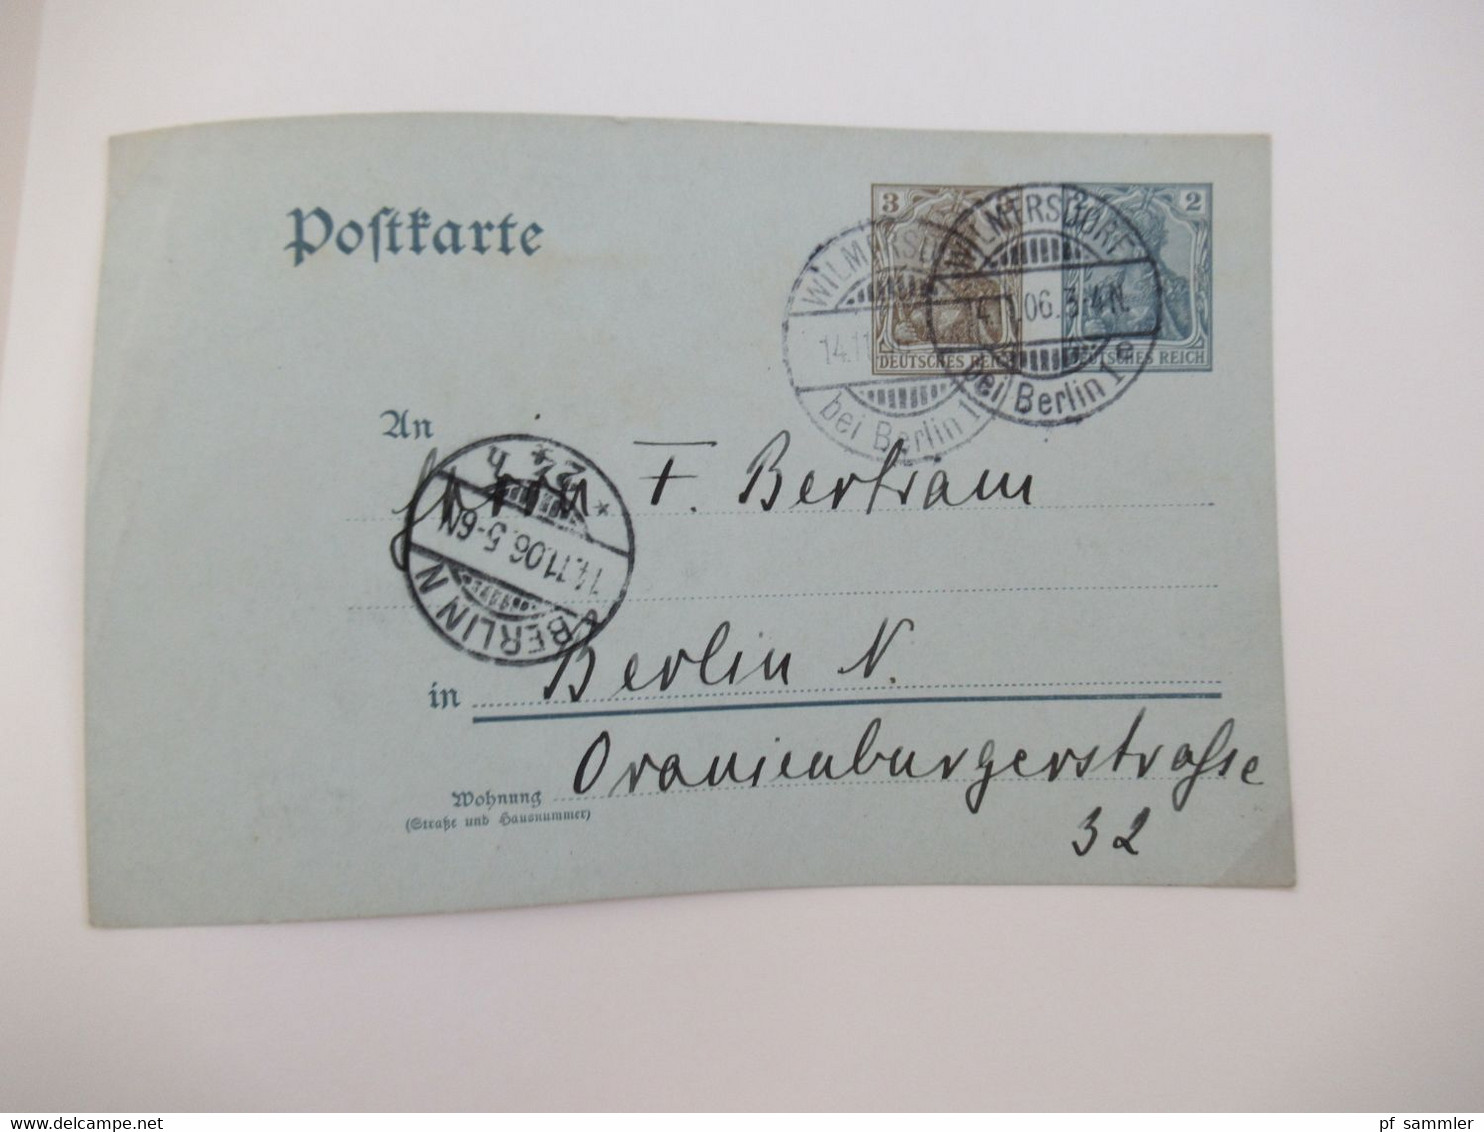 Spezial Slg. Berliner Postanstalten A - Z Stempelsammlung ab Pfennige mit schönen Stücken / Briefstücke Stöberposten!